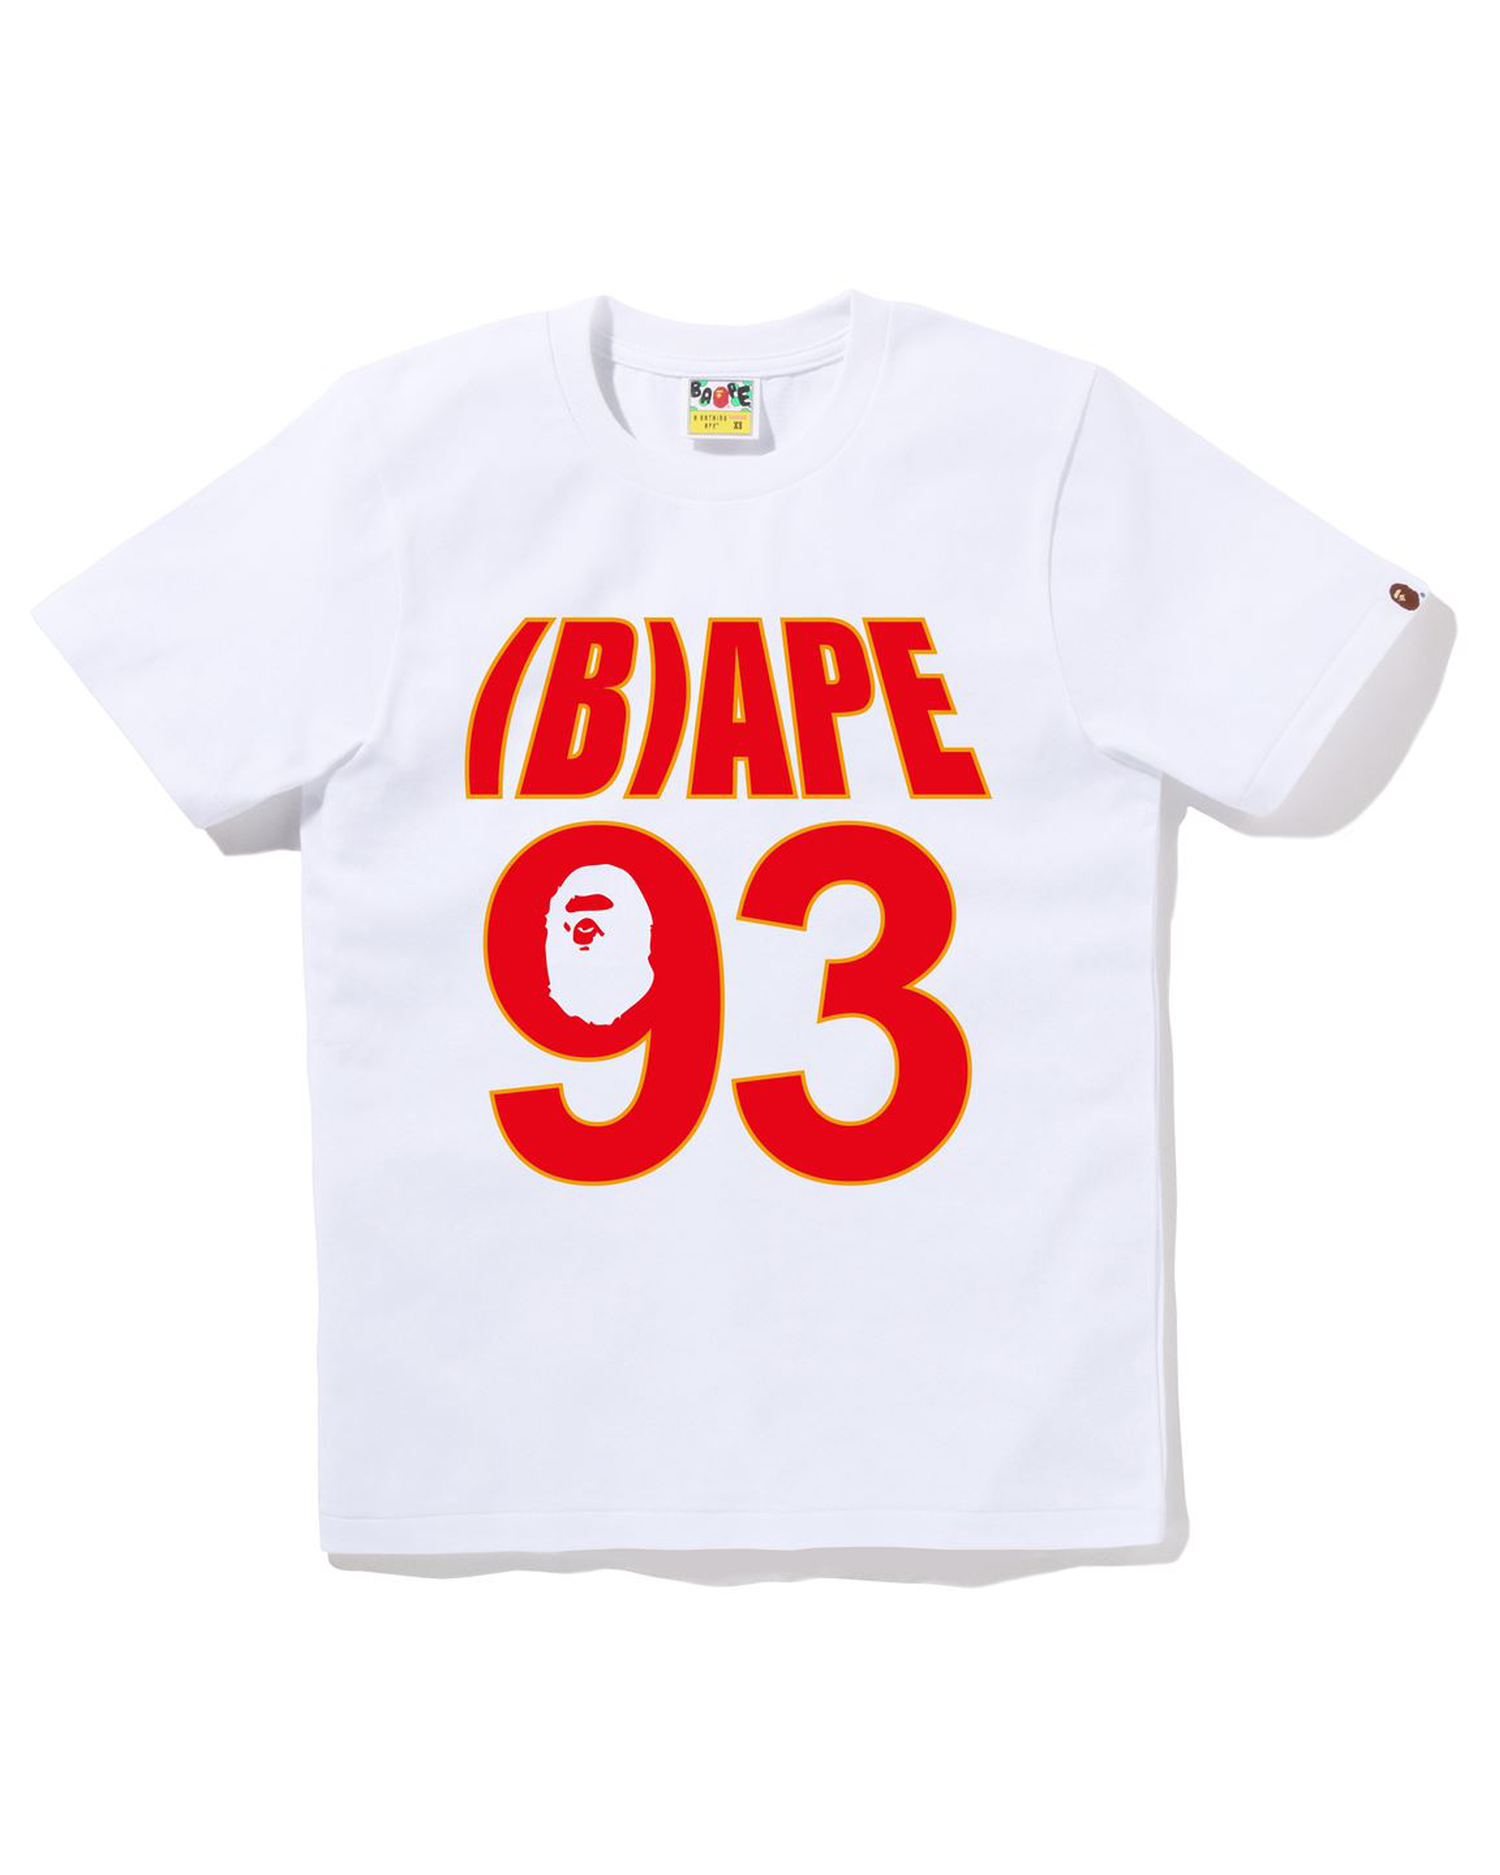 Shop BAPE 93 Tee Online | BAPE